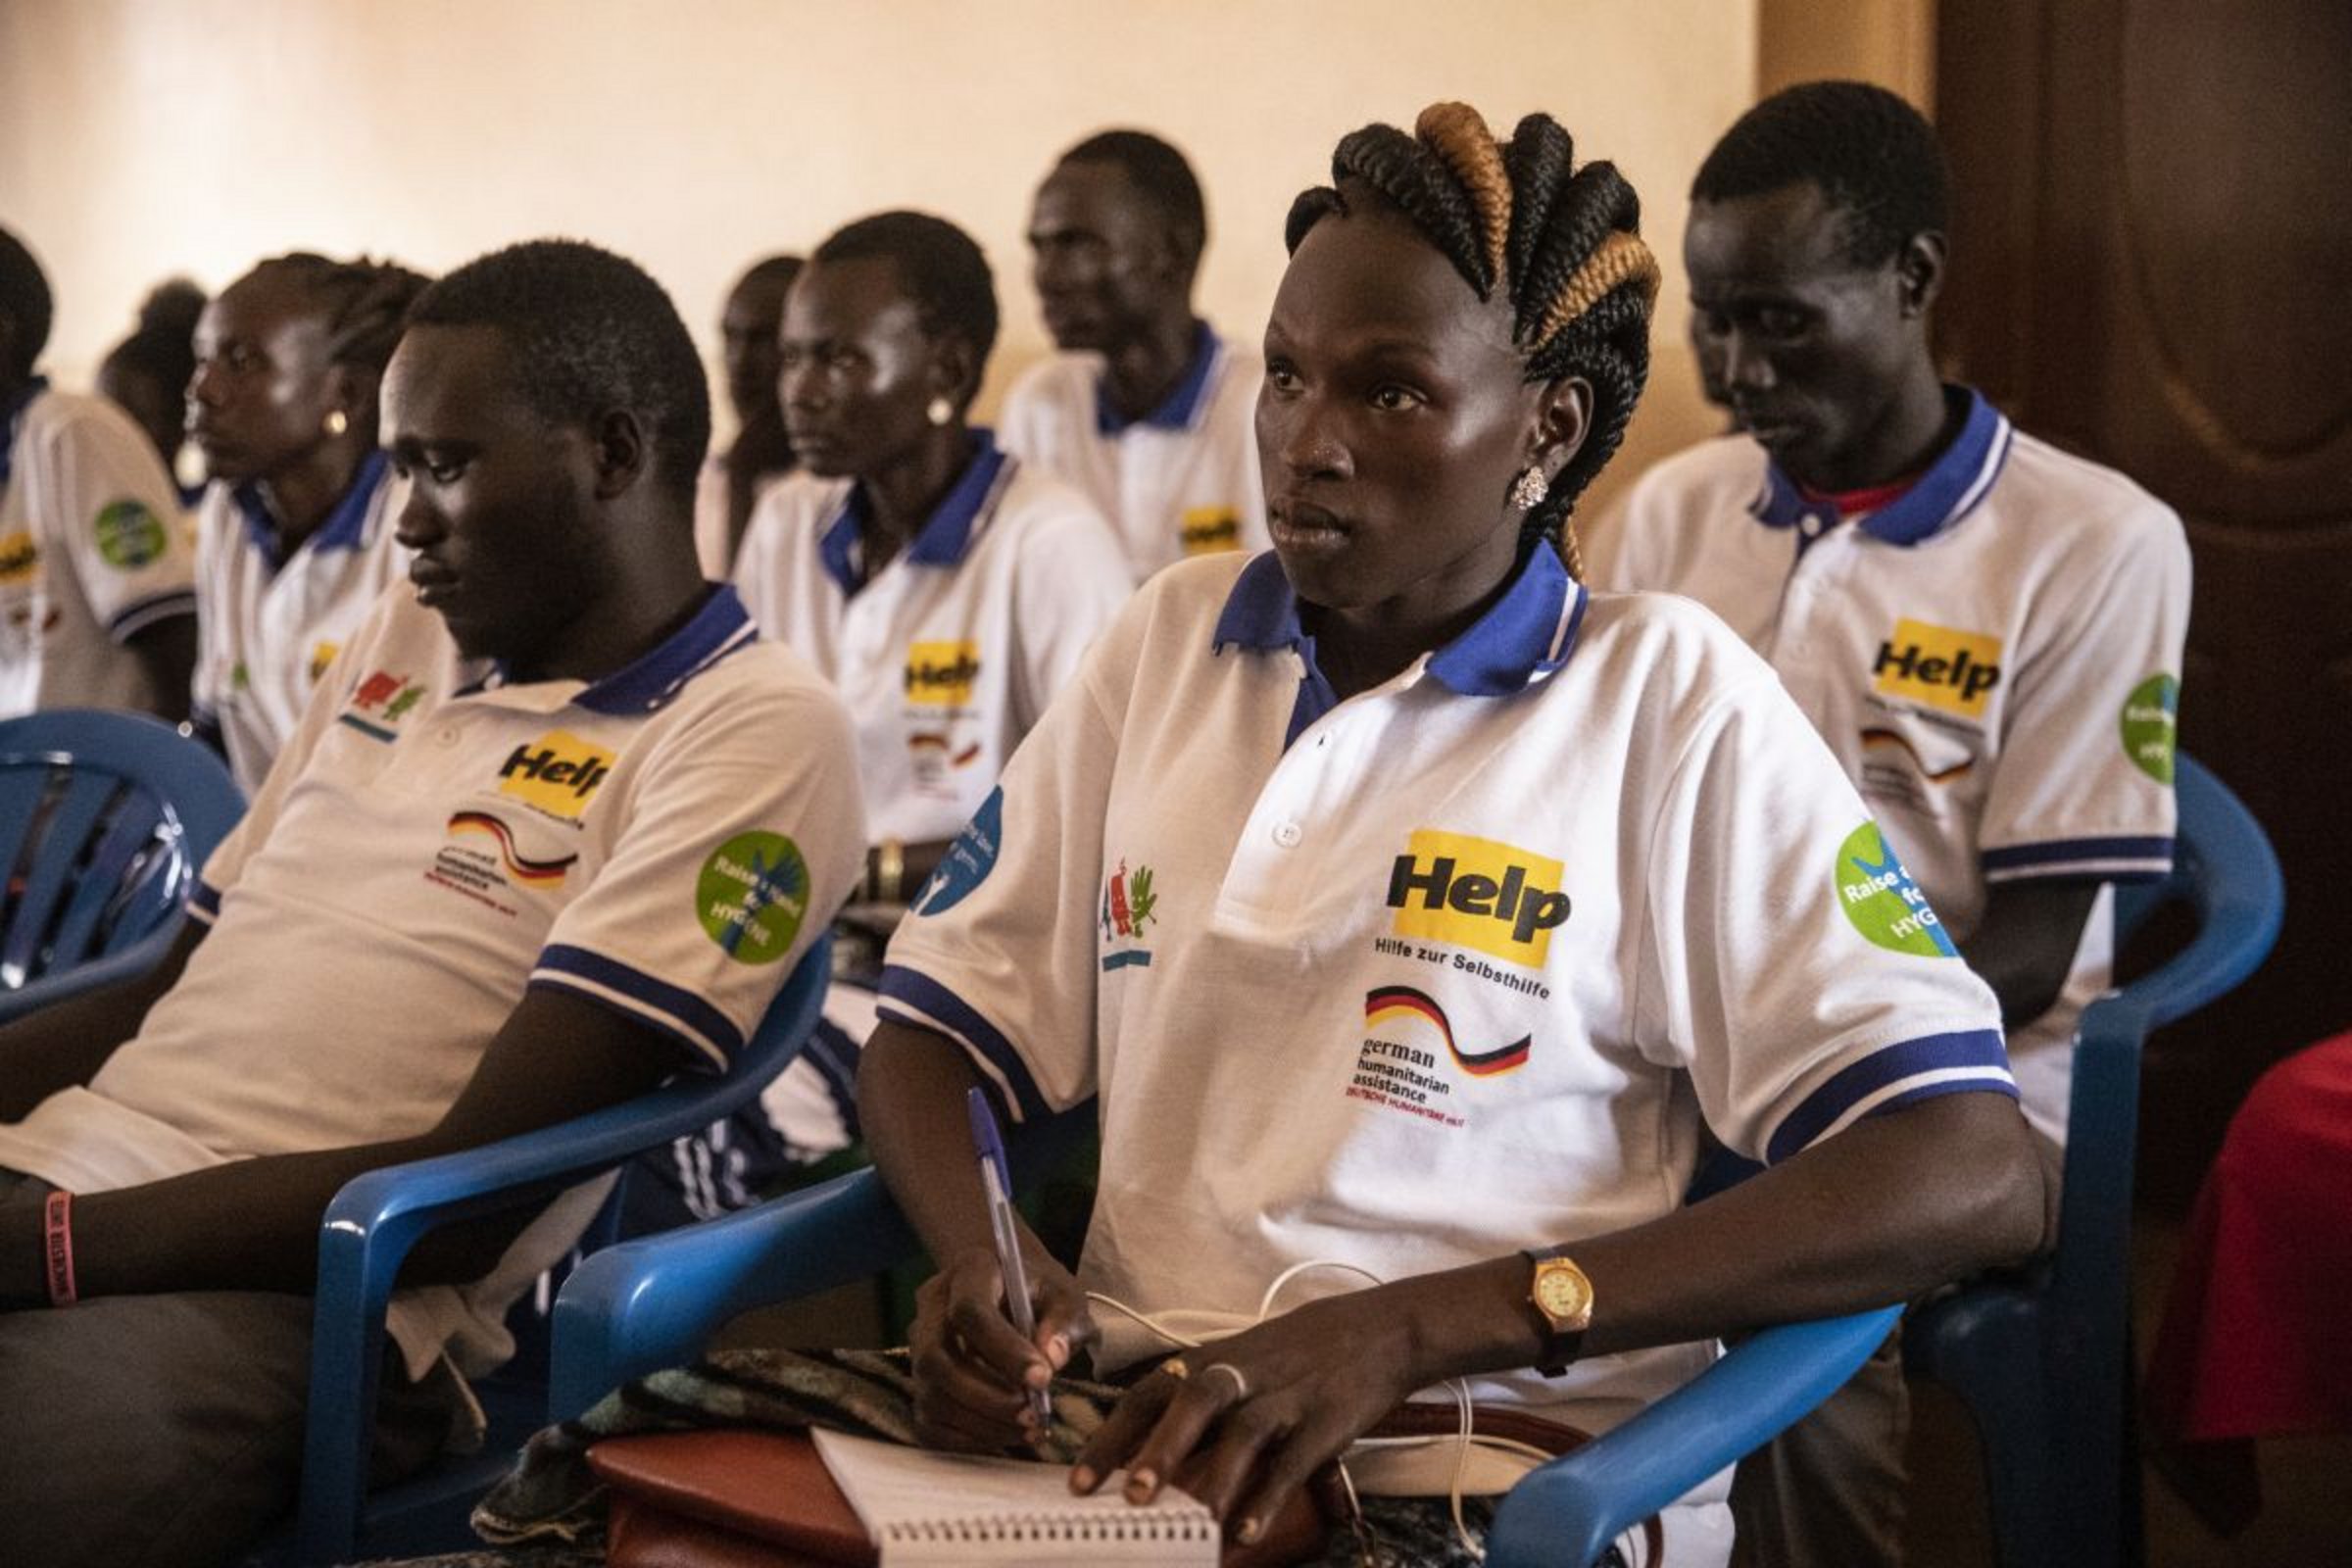 Im Südsudan bildet Help zahlreiche Hygiene-Botschafter:innen aus, die über Krankheiten und Hygienemaßnahmen informieren.